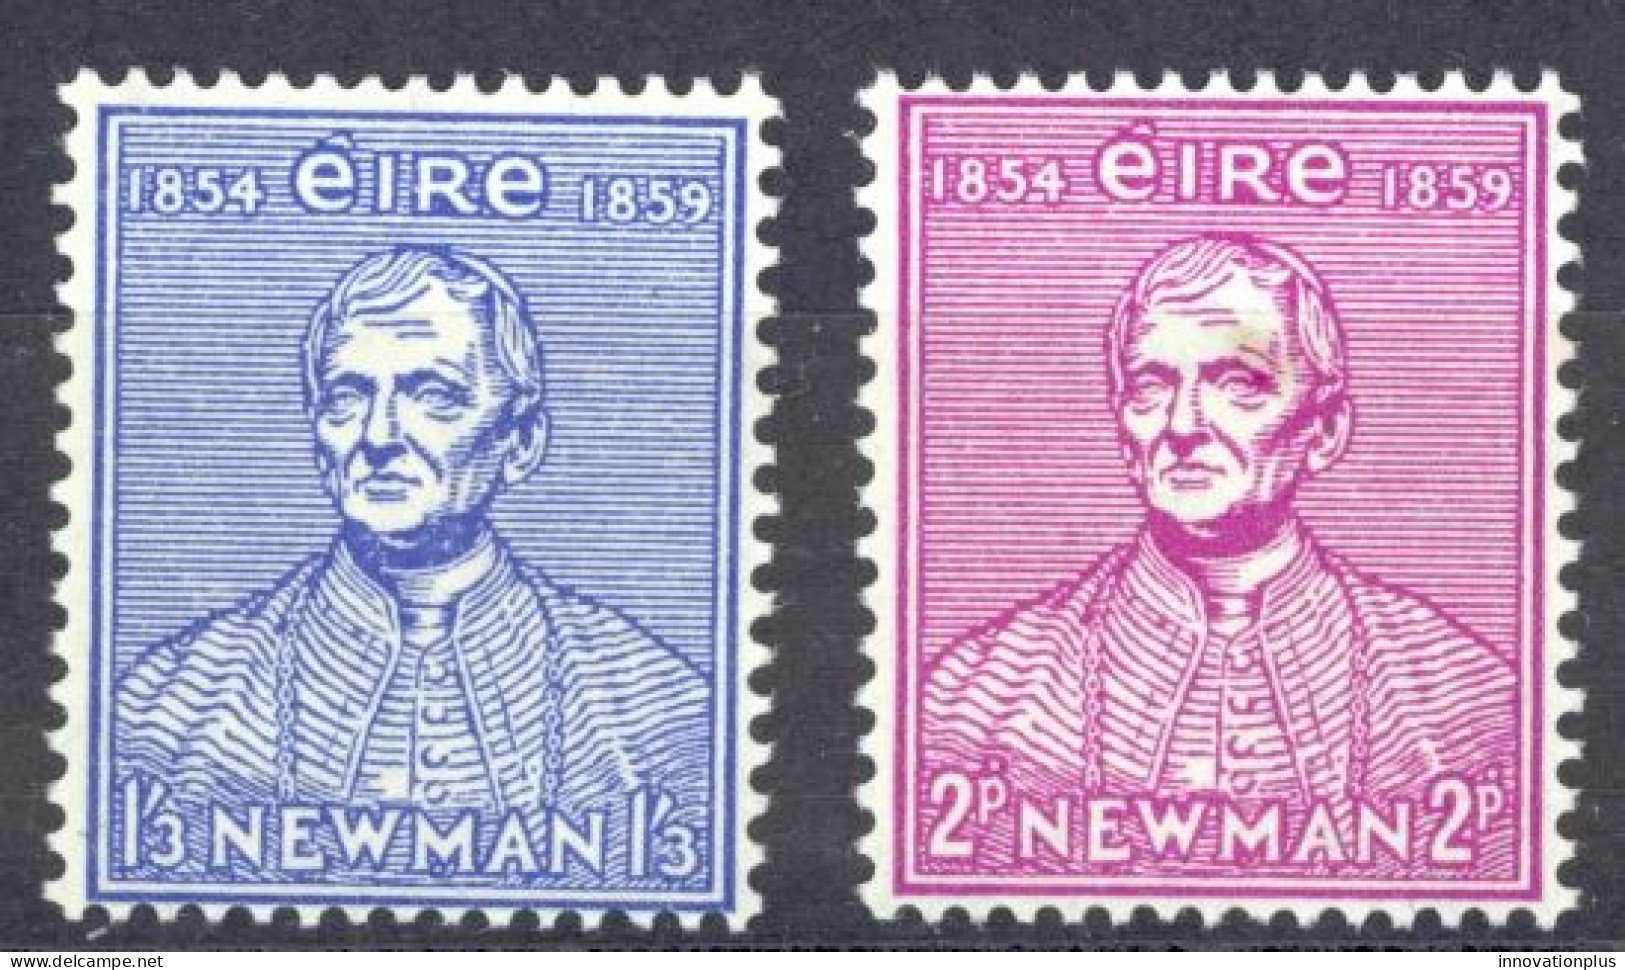 Ireland Sc# 153-154 MH 1954 John Henry Cardinal Newman - Ongebruikt